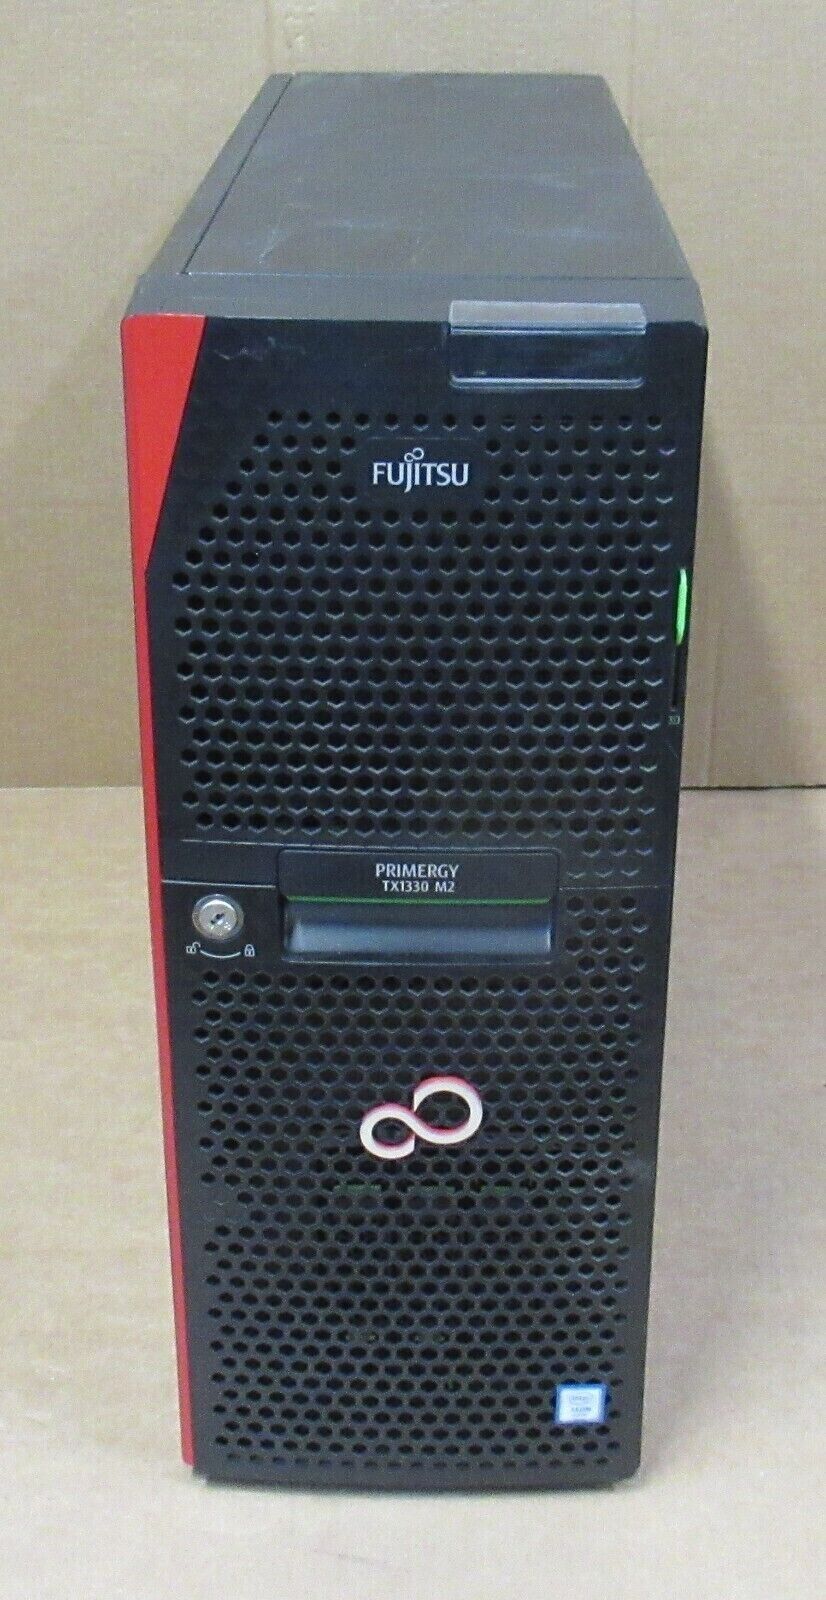 Fujitsu Primergy TX1330 M2 4-Core E3-1270v5 32GB RAM 600GB SAS Tower Server